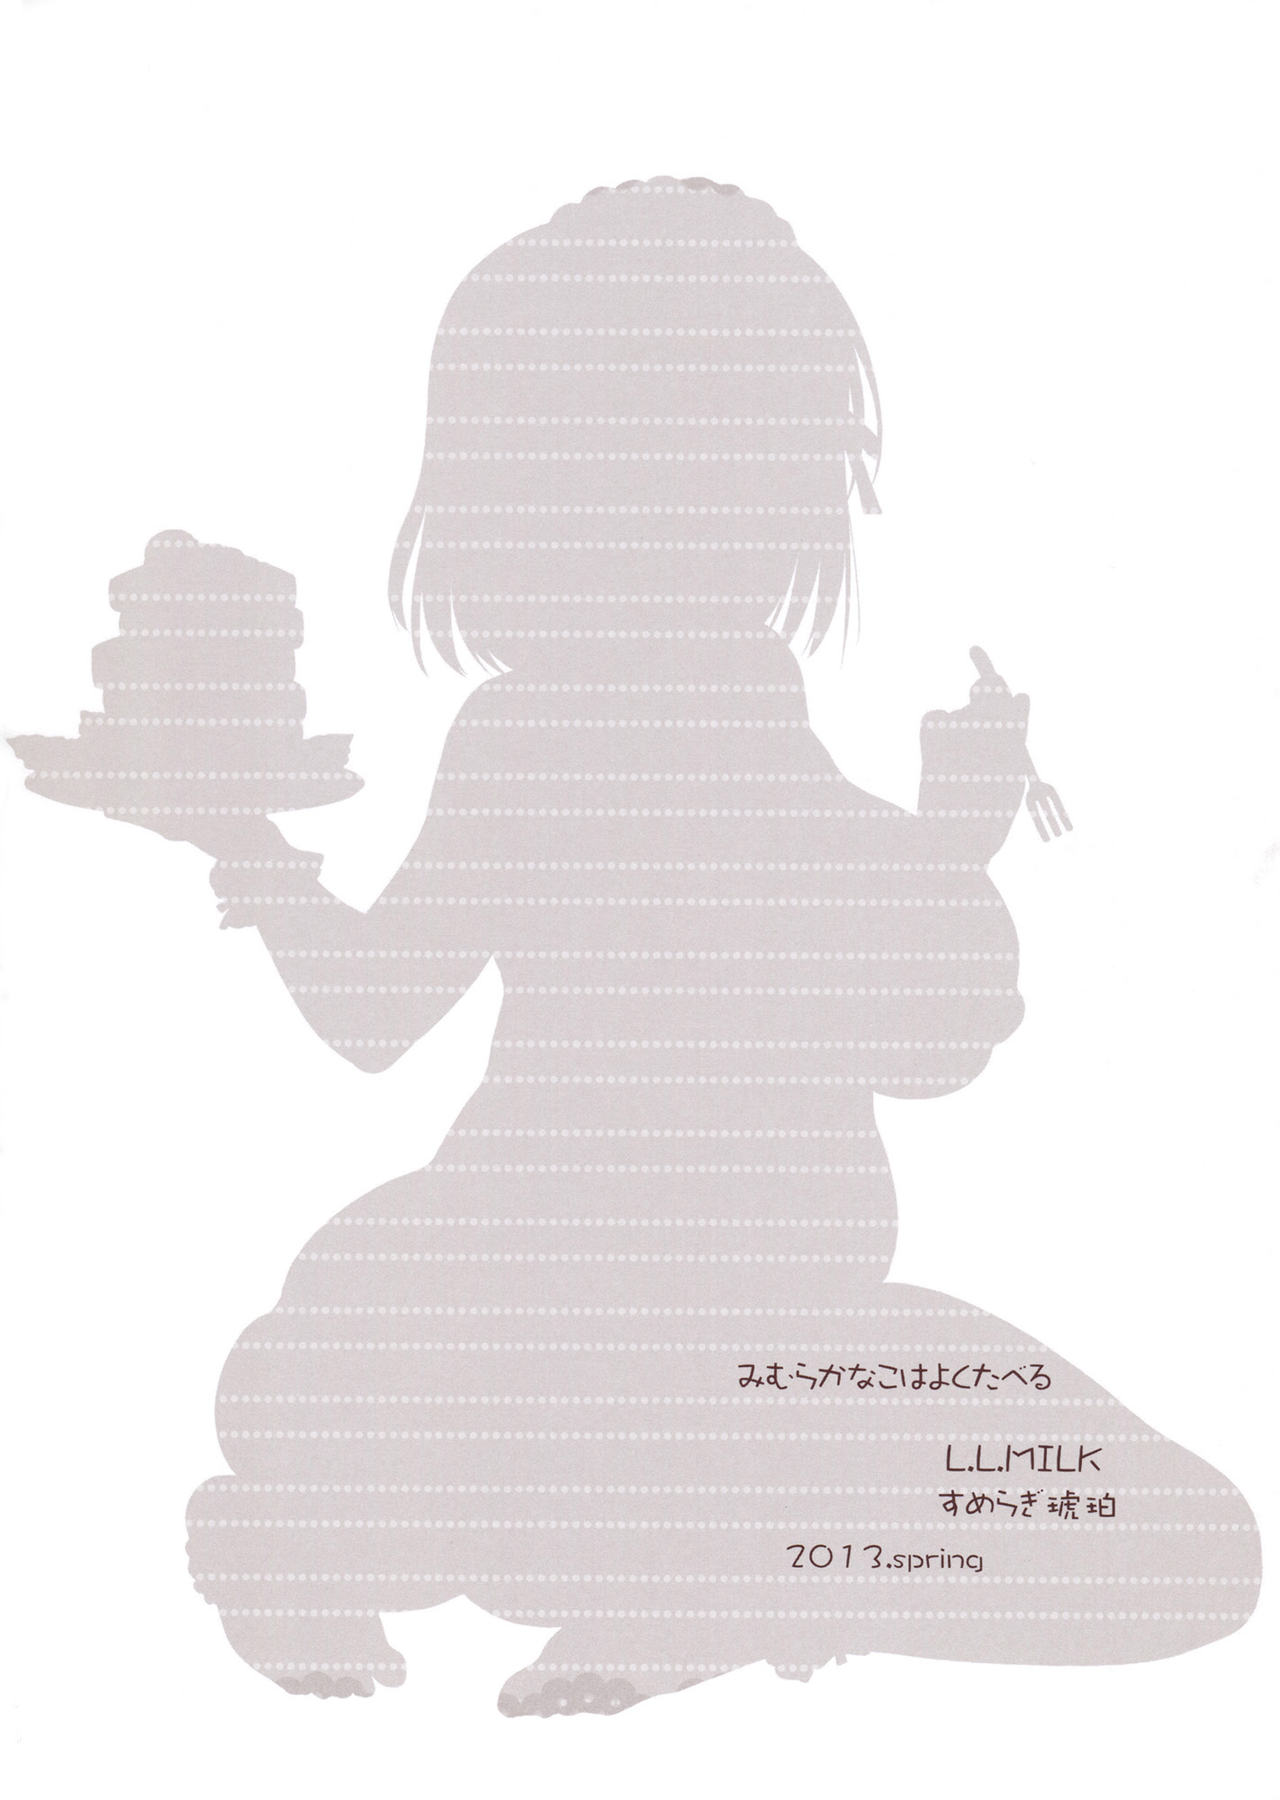 (こみトレ21) [L.L.MILK (すめらぎ琥珀)] 三村かな子はよく食べる (アイドルマスター シンデレラガールズ) [英訳] [無修正]